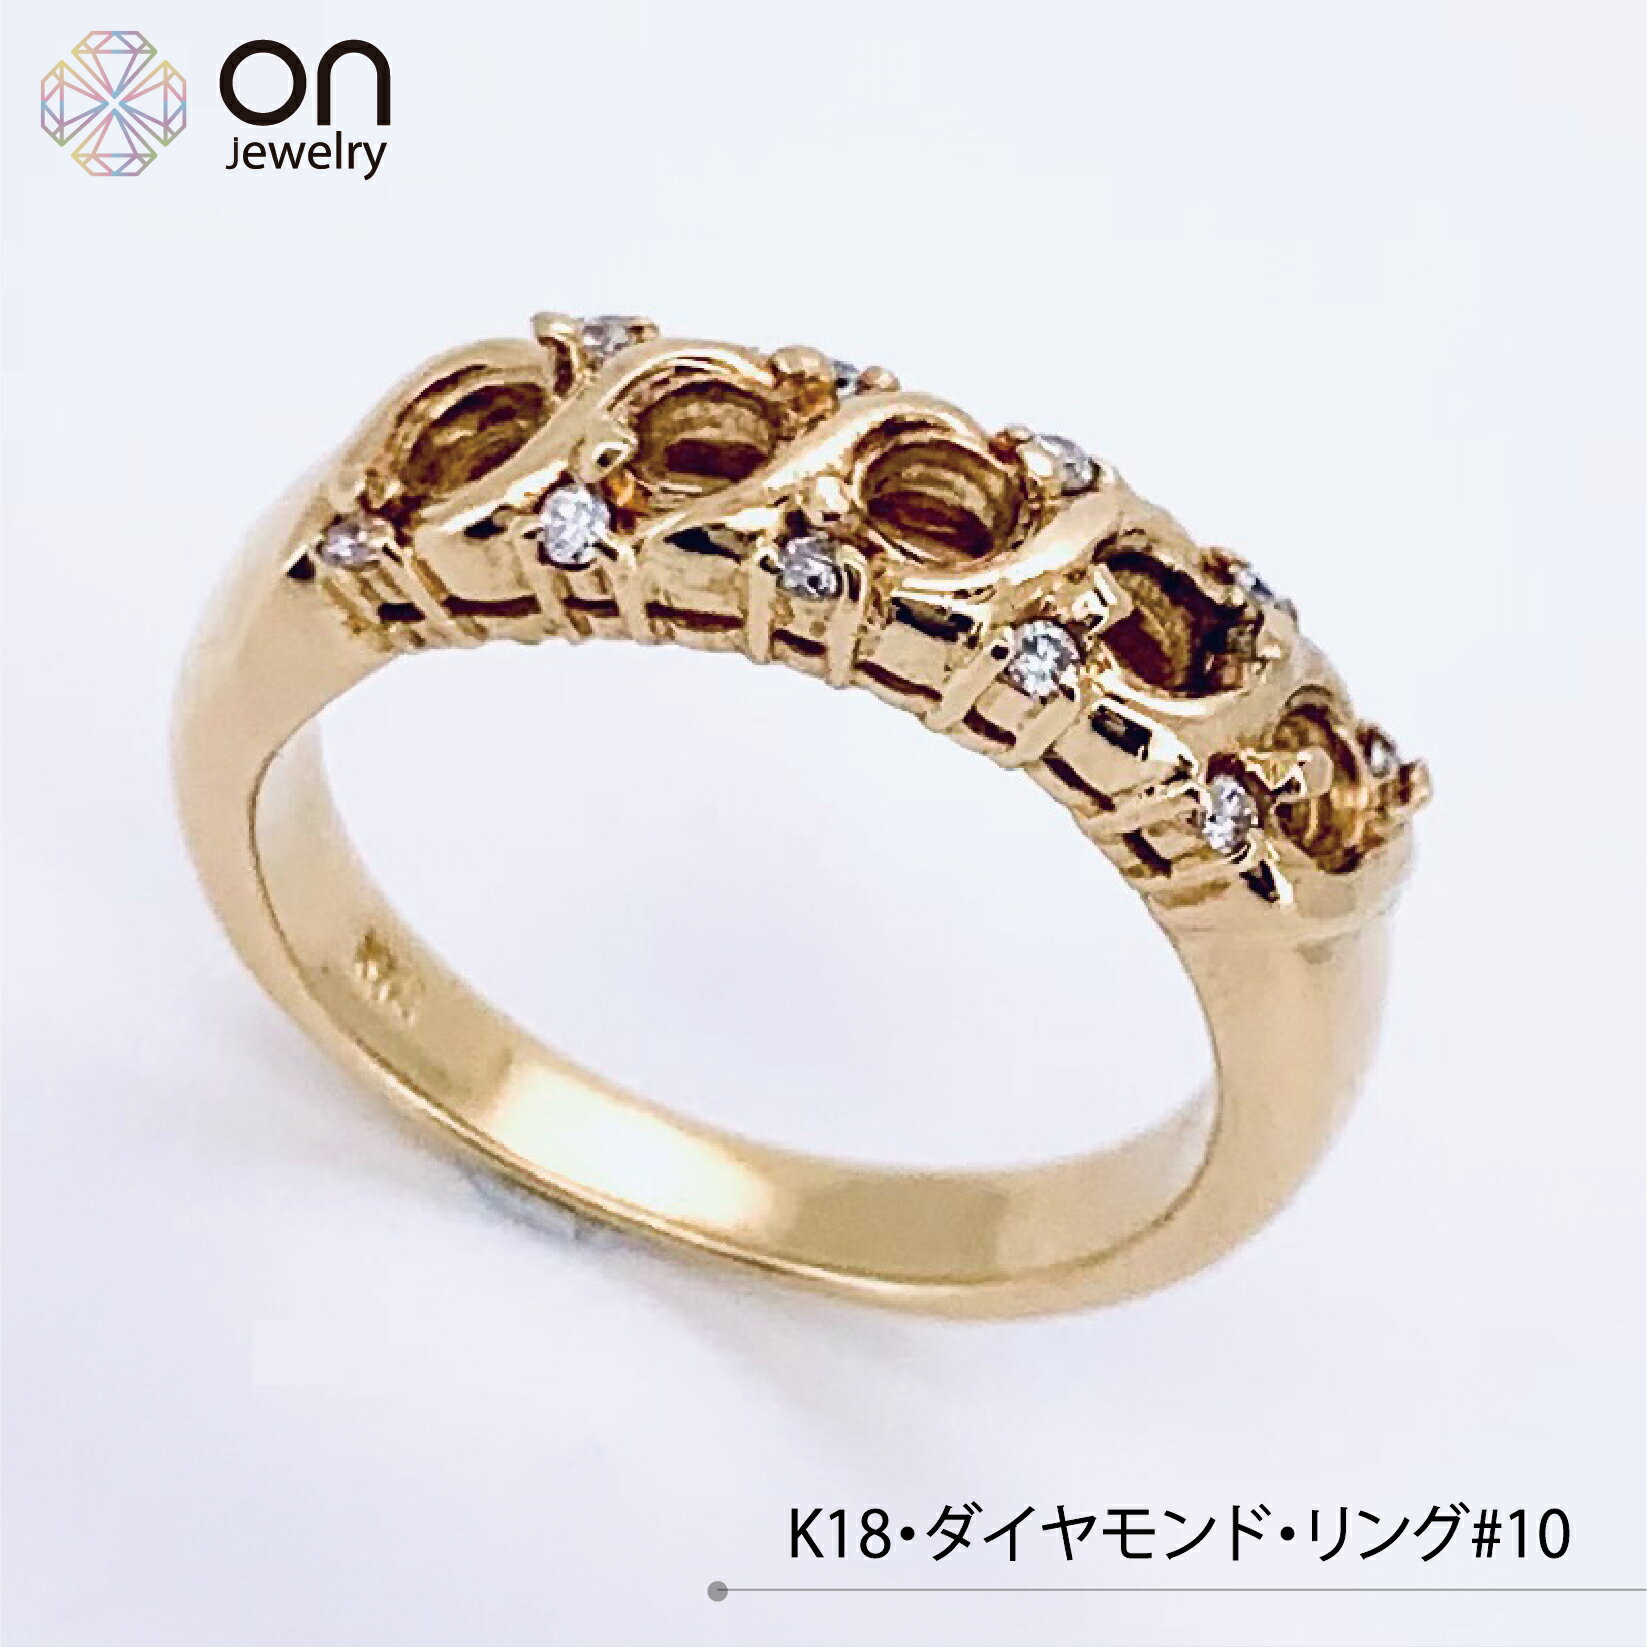 K18 ゴールド K18金 ダイヤモンド0.05ct リング デザイン 指輪10号 ±4までサイズ直し無料 コンディションSランク 新品仕上げ済みの商品4月誕生石